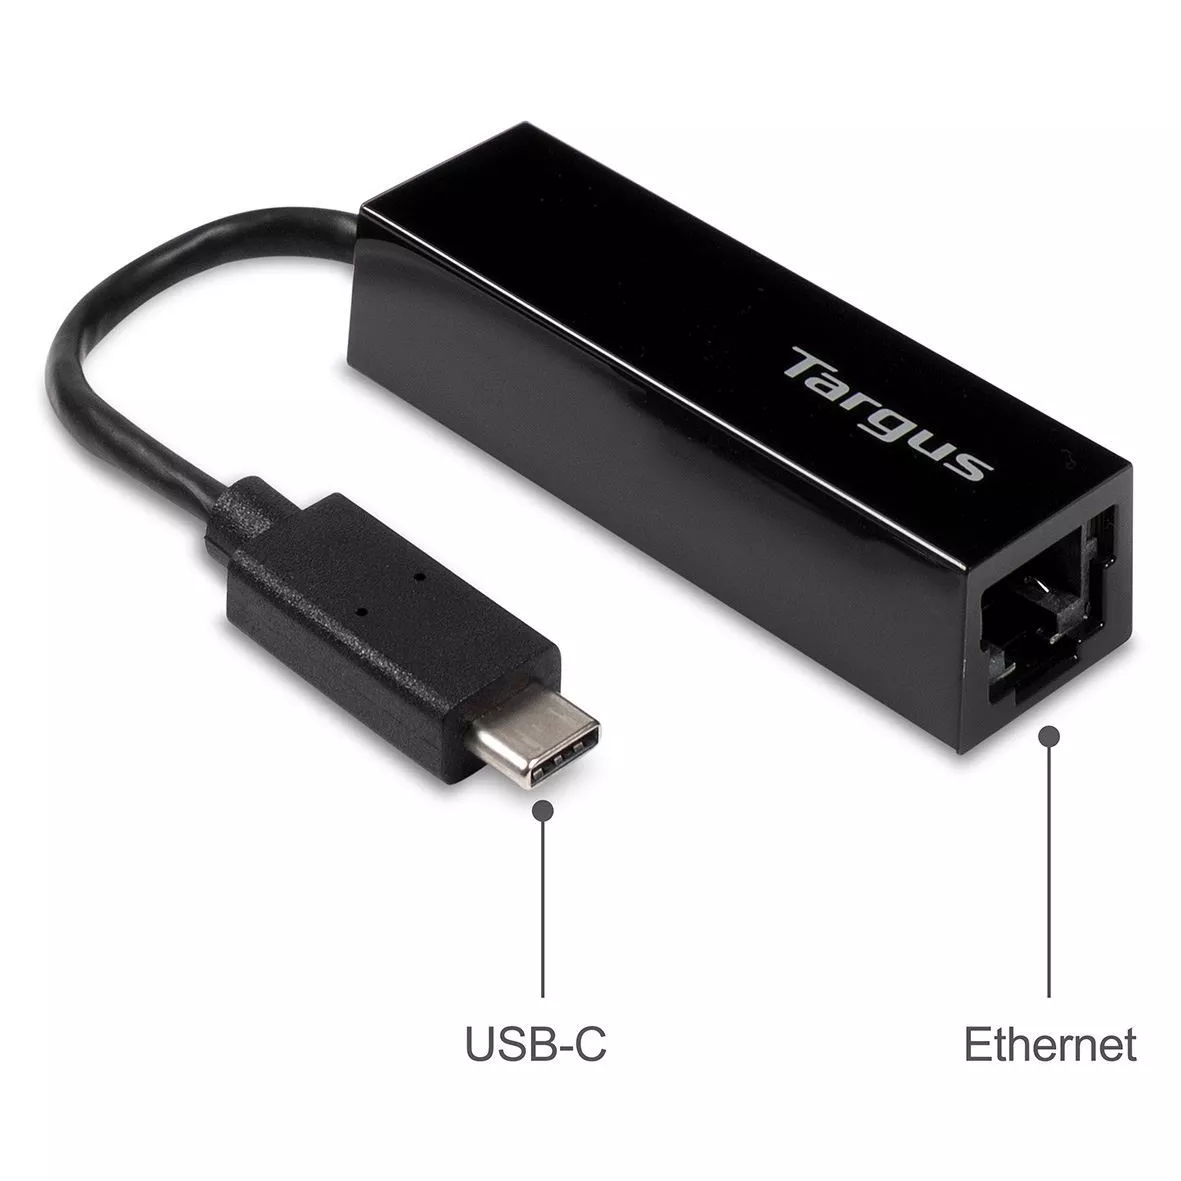 Vente TARGUS USB-C Laptops and USB-C Tablets Targus au meilleur prix - visuel 2